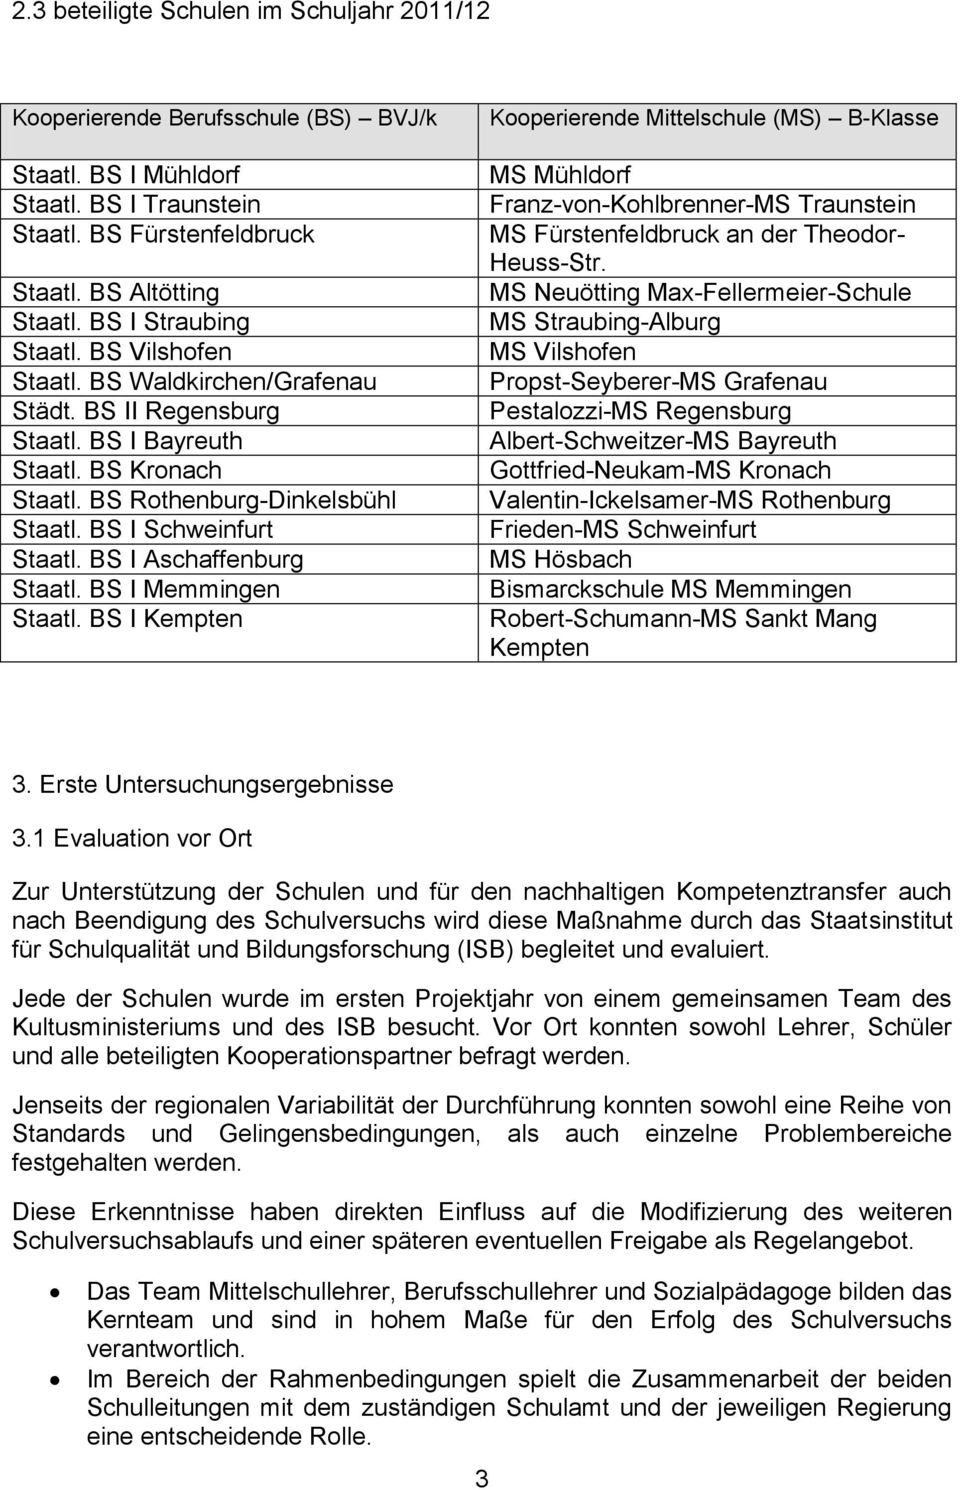 BS I Aschaffenburg Staatl. BS I Memmingen Staatl. BS I Kempten Kooperierende Mittelschule (MS) B-Klasse MS Mühldorf Franz-von-Kohlbrenner-MS Traunstein MS Fürstenfeldbruck an der Theodor- Heuss-Str.